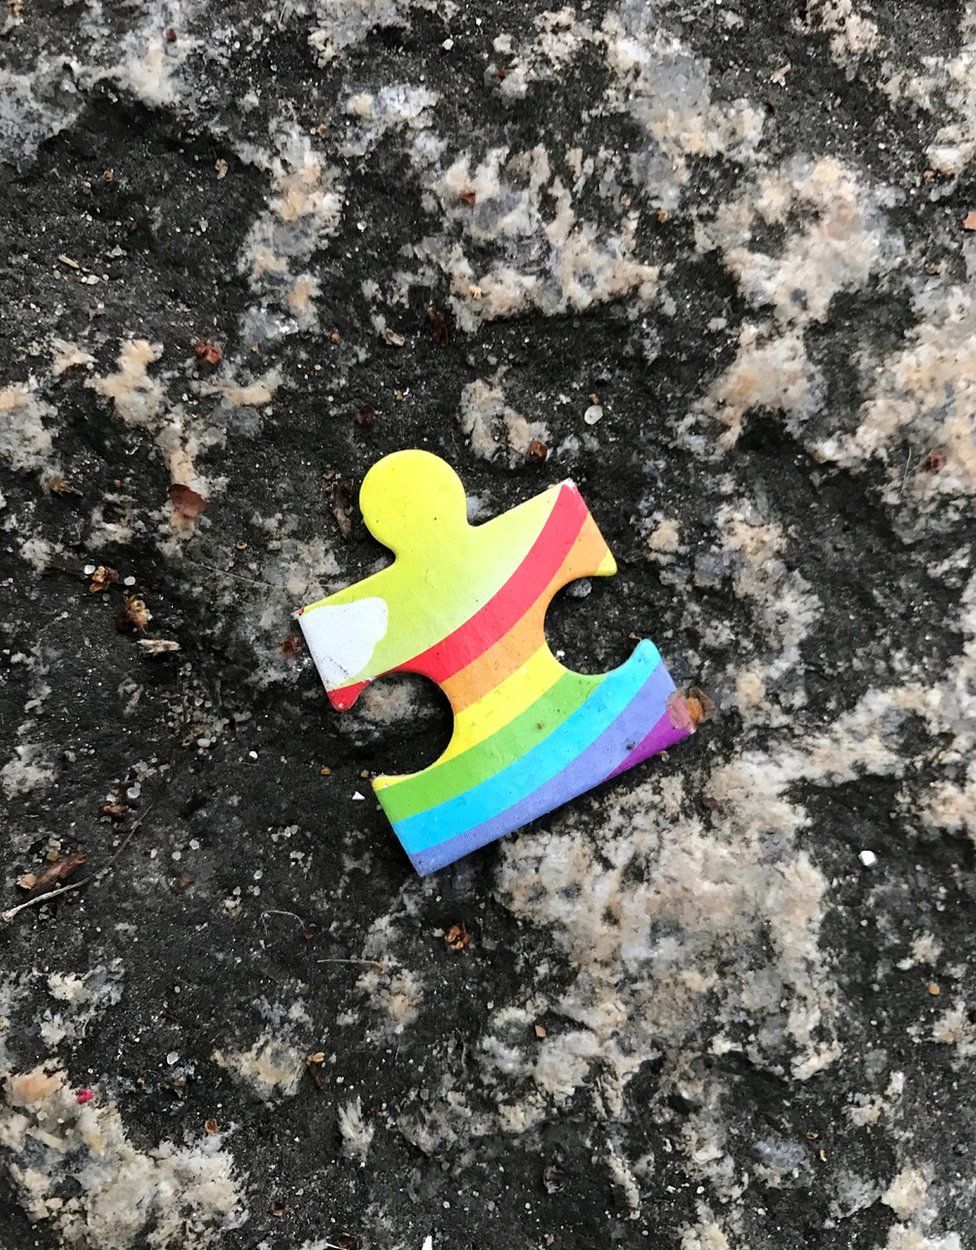 Rainbow coloured jigsaw piece on the ground